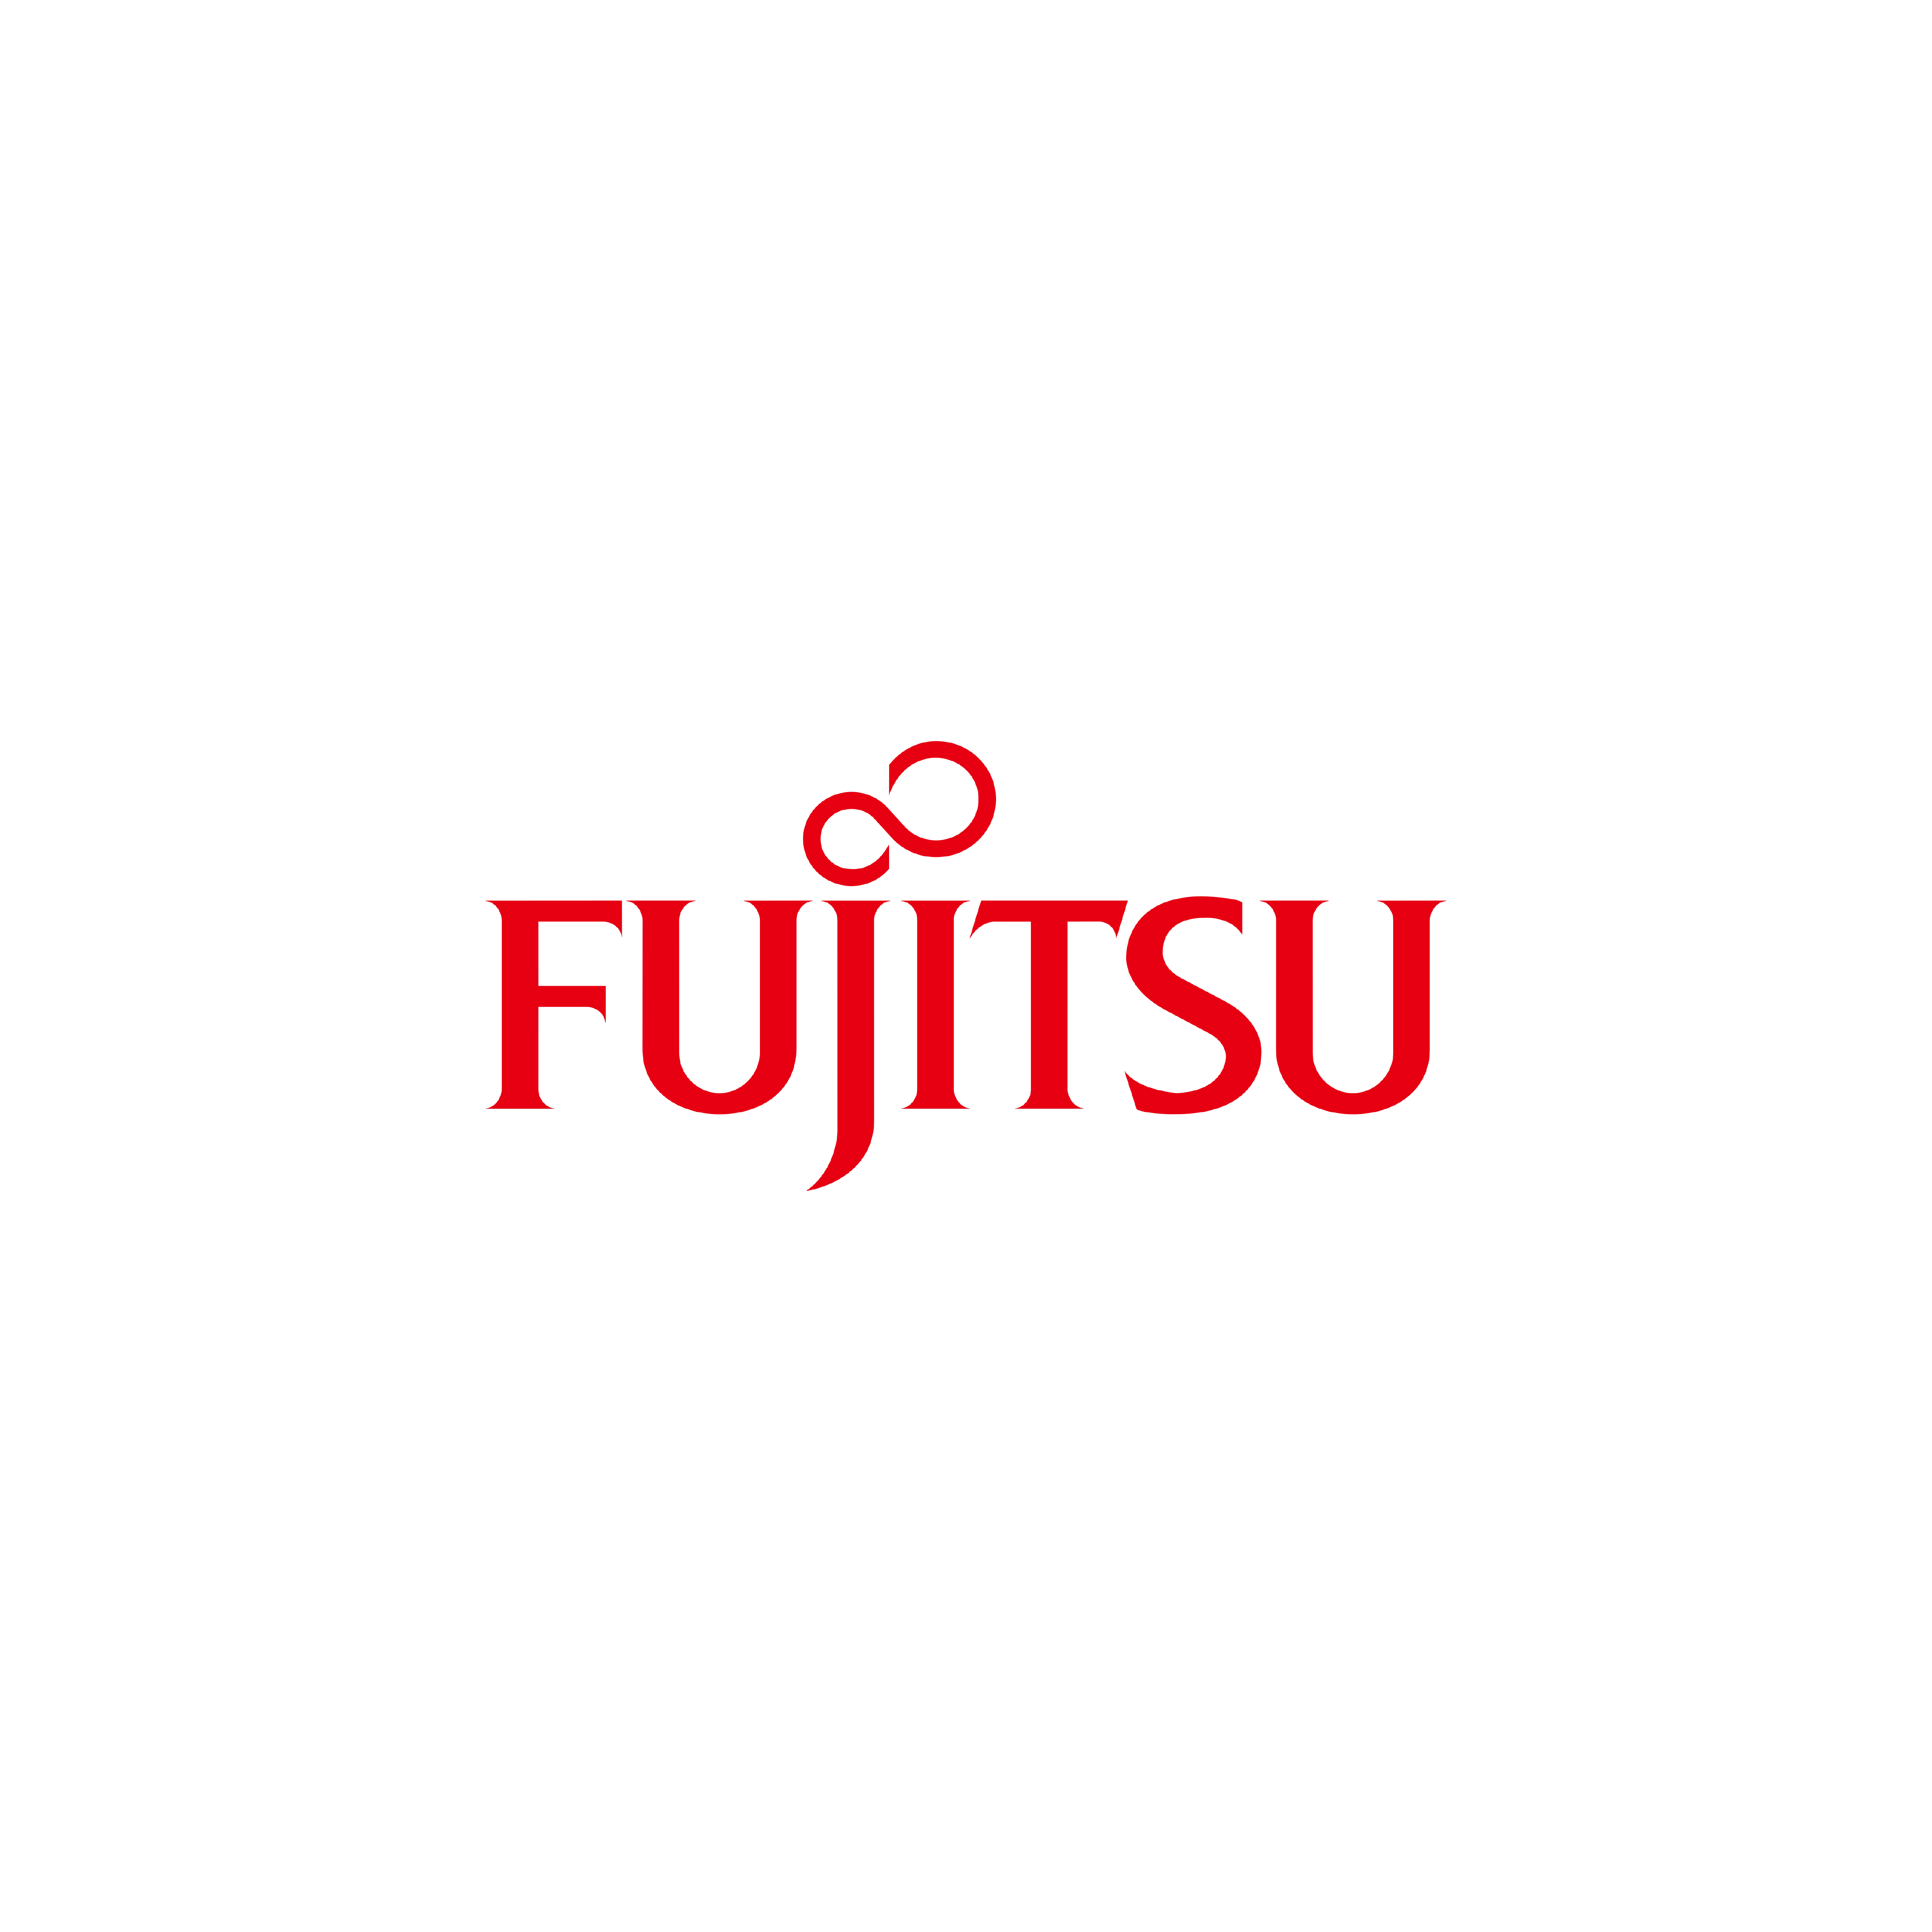 fujitsu (square)